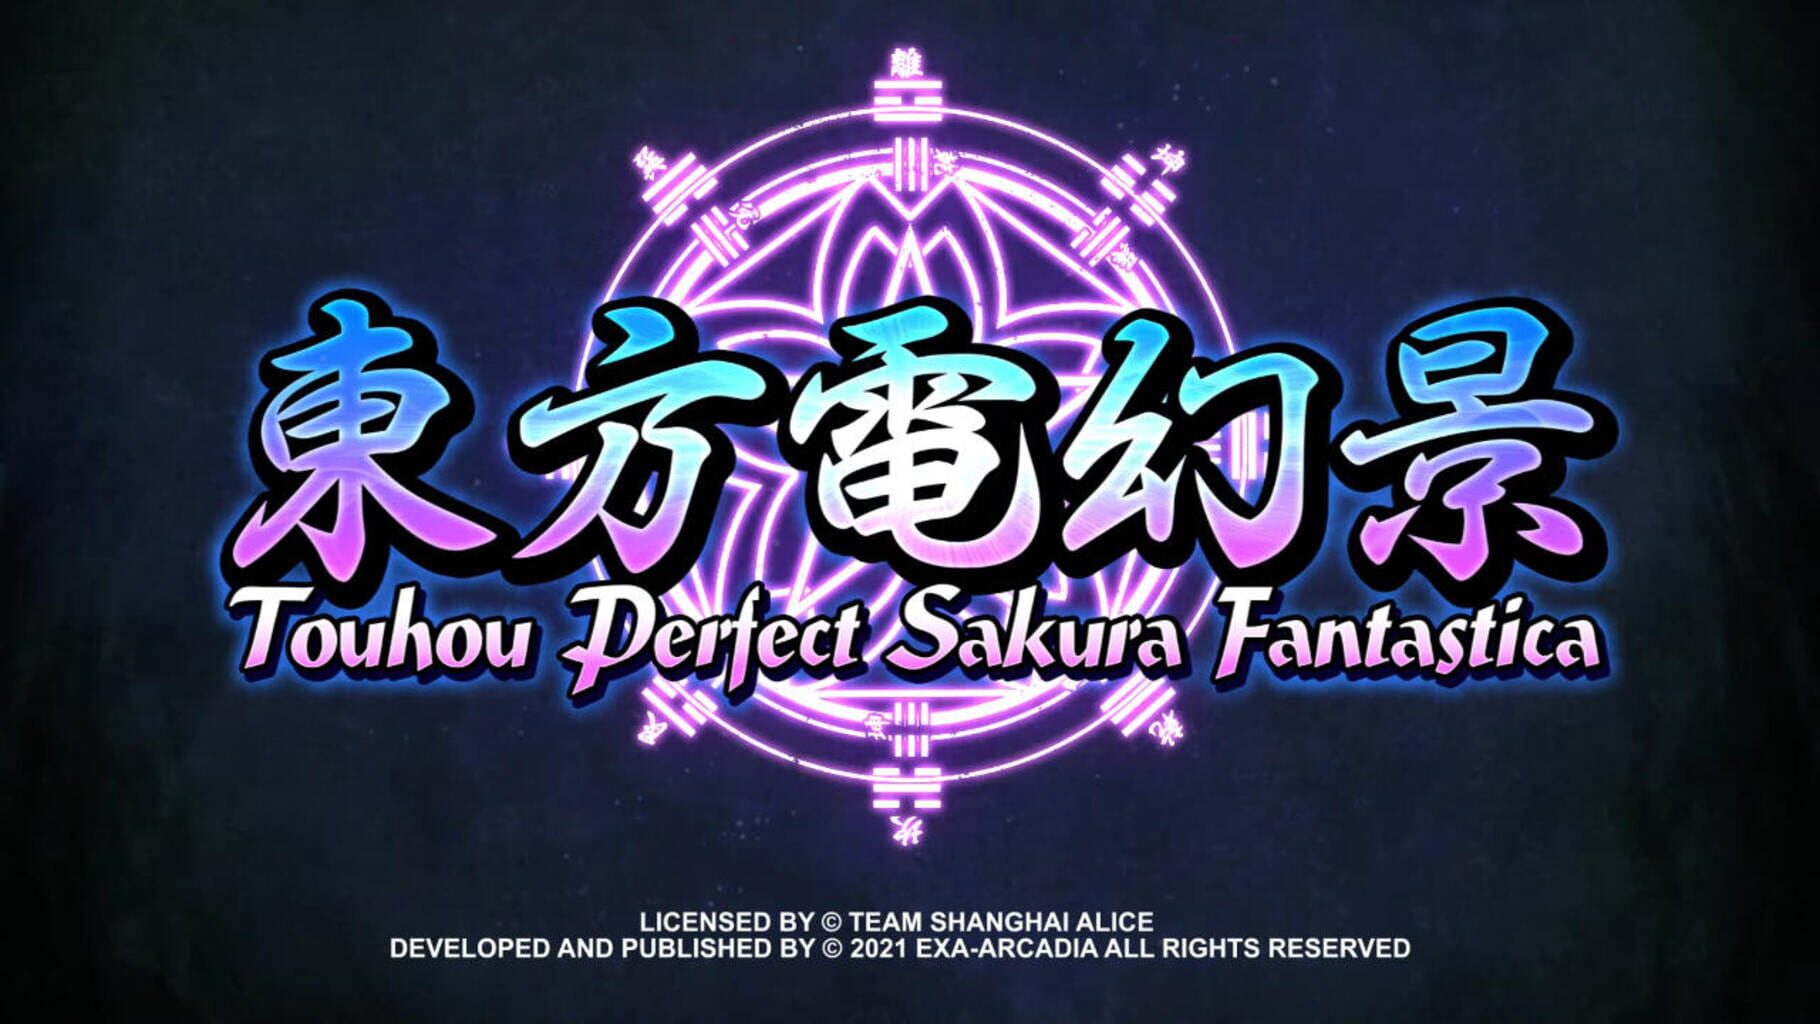 Touhou Perfect Sakura Fantastica